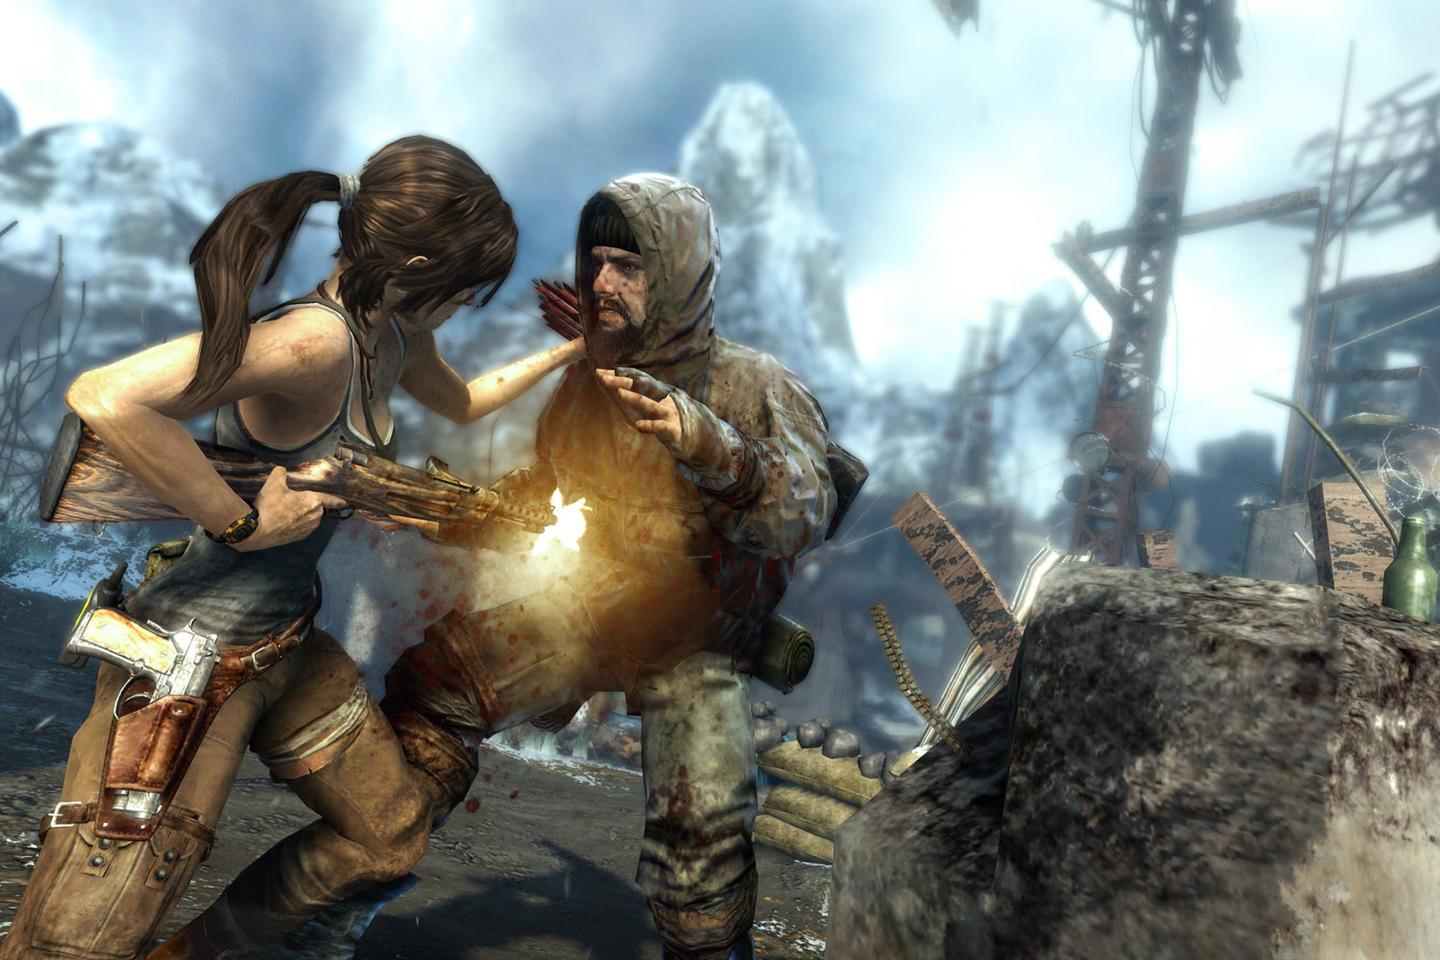 Lara firing gun at man wearing hood reaching for her.